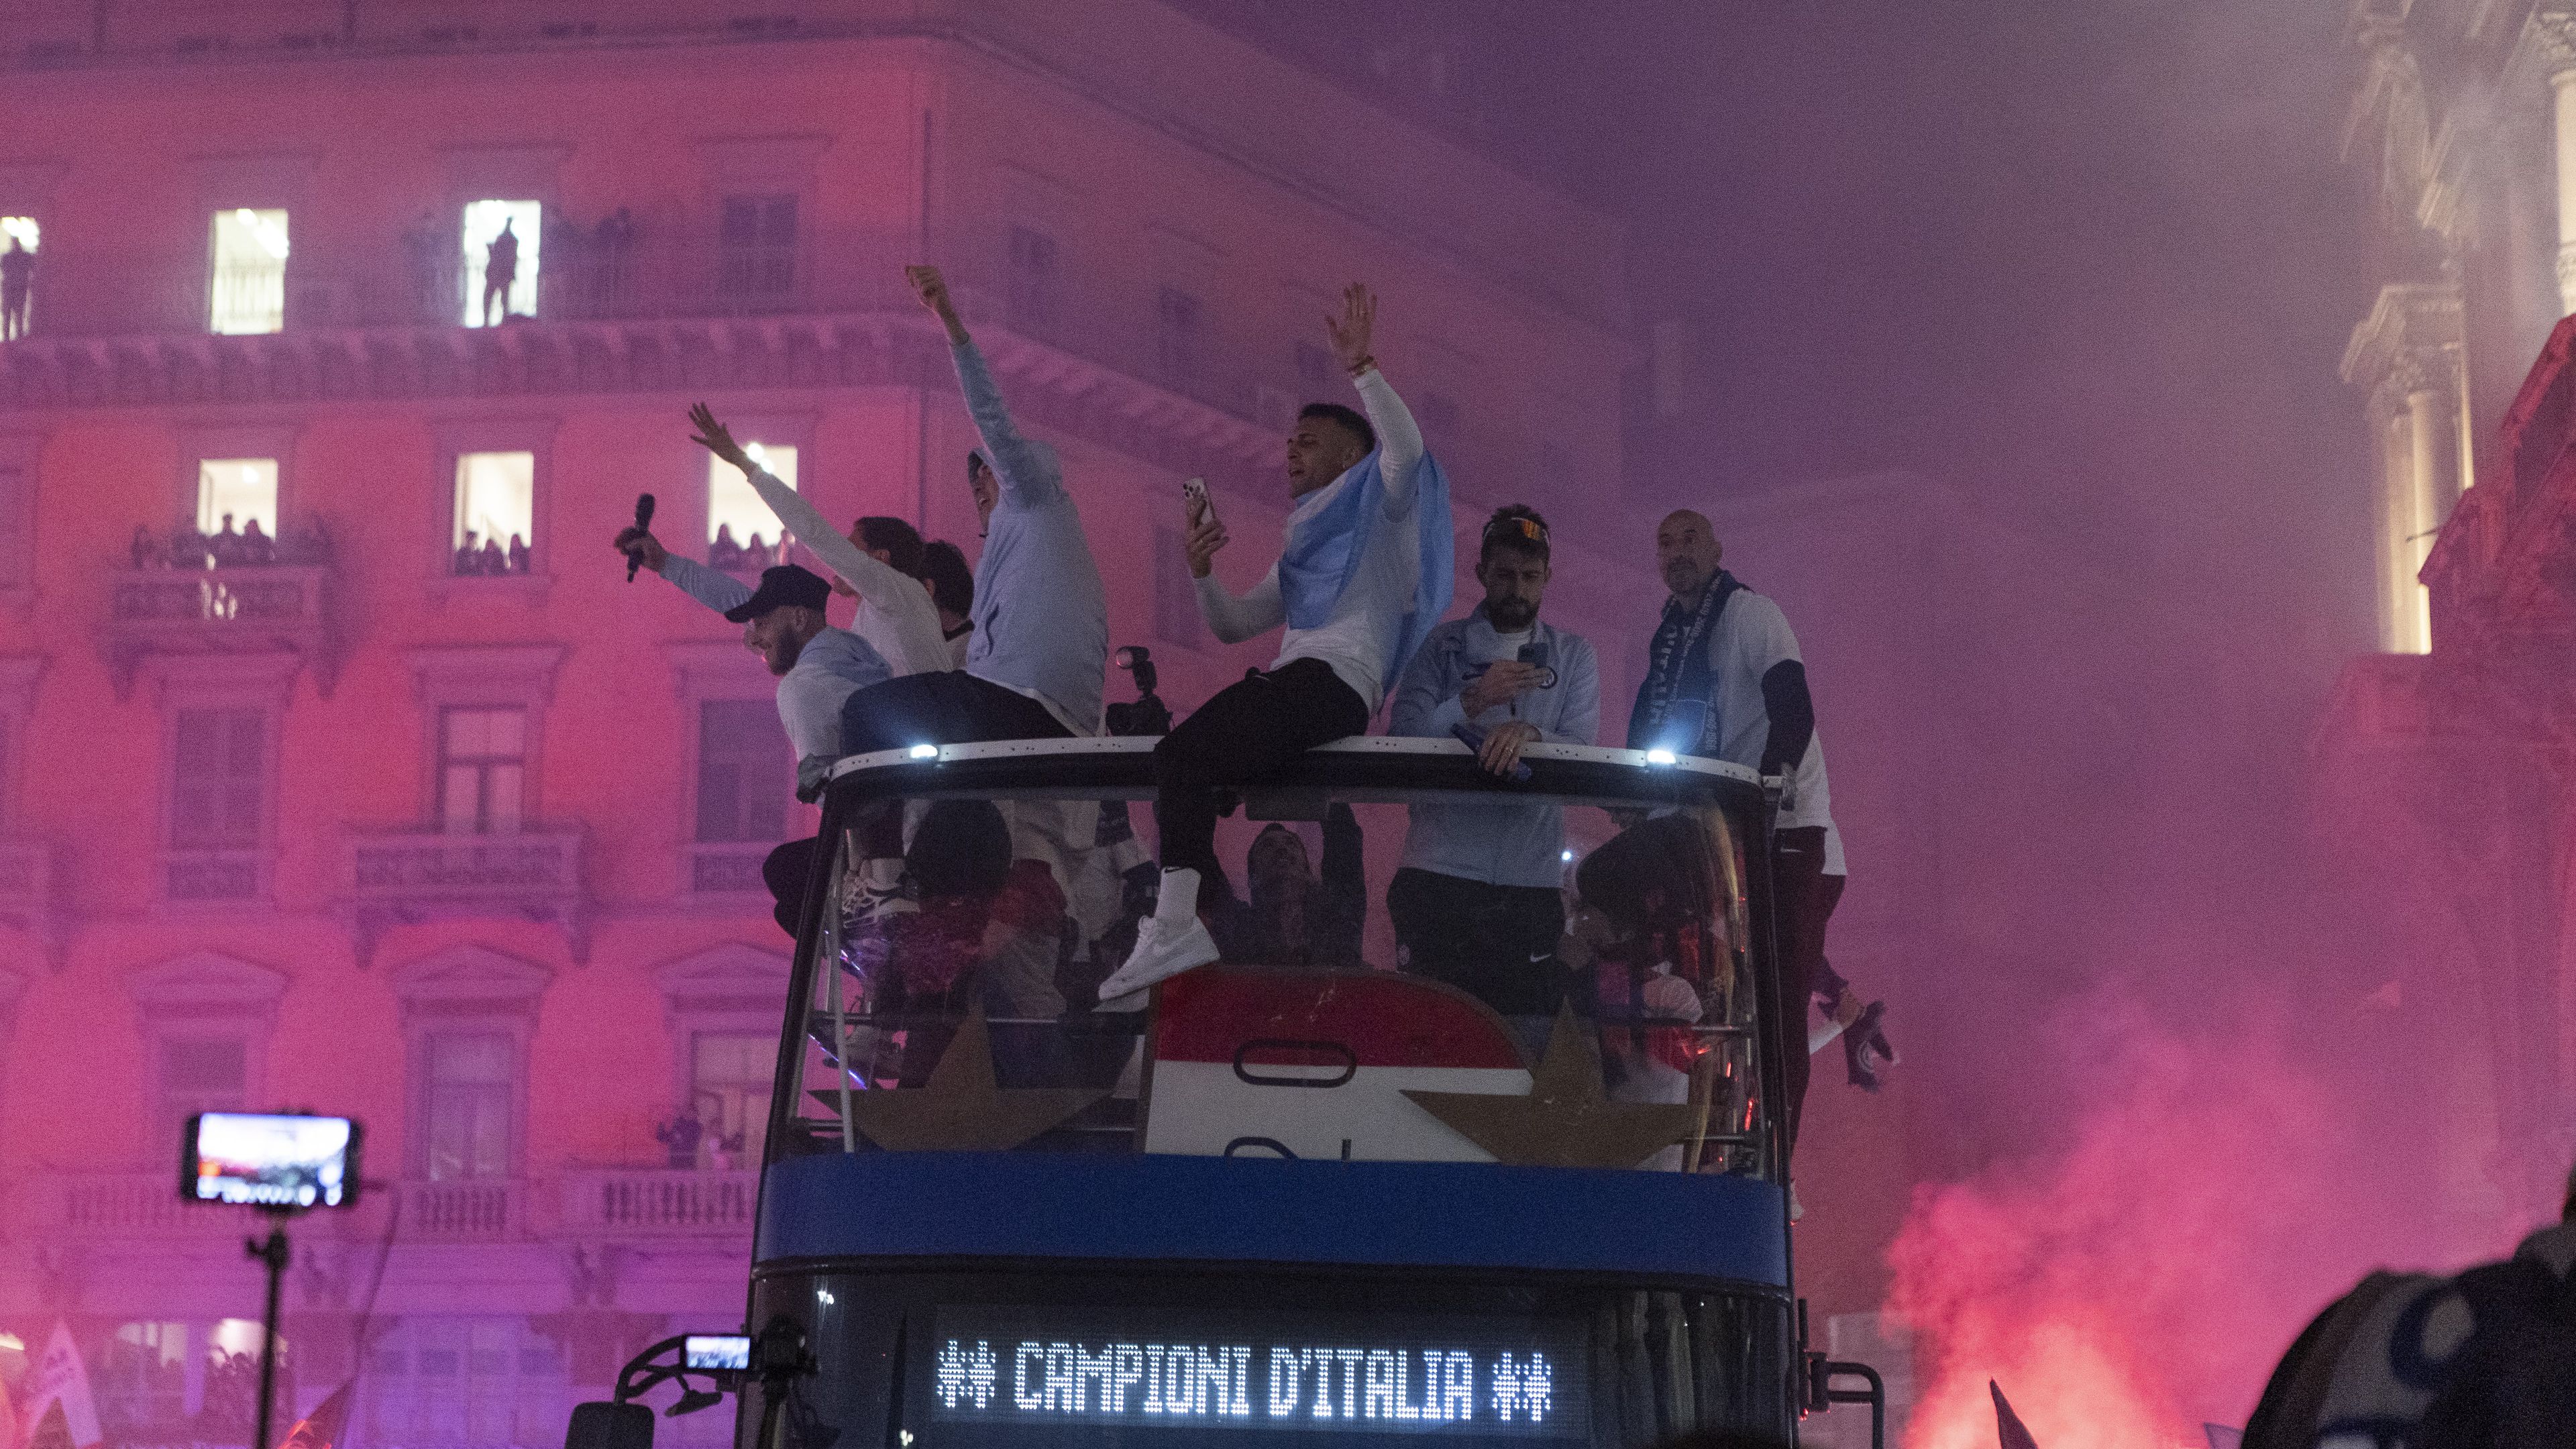 Így ünnepelte bajnoki címét az Inter, de büntetés nélkül nem fogják a milánóiak megúszni – videóval